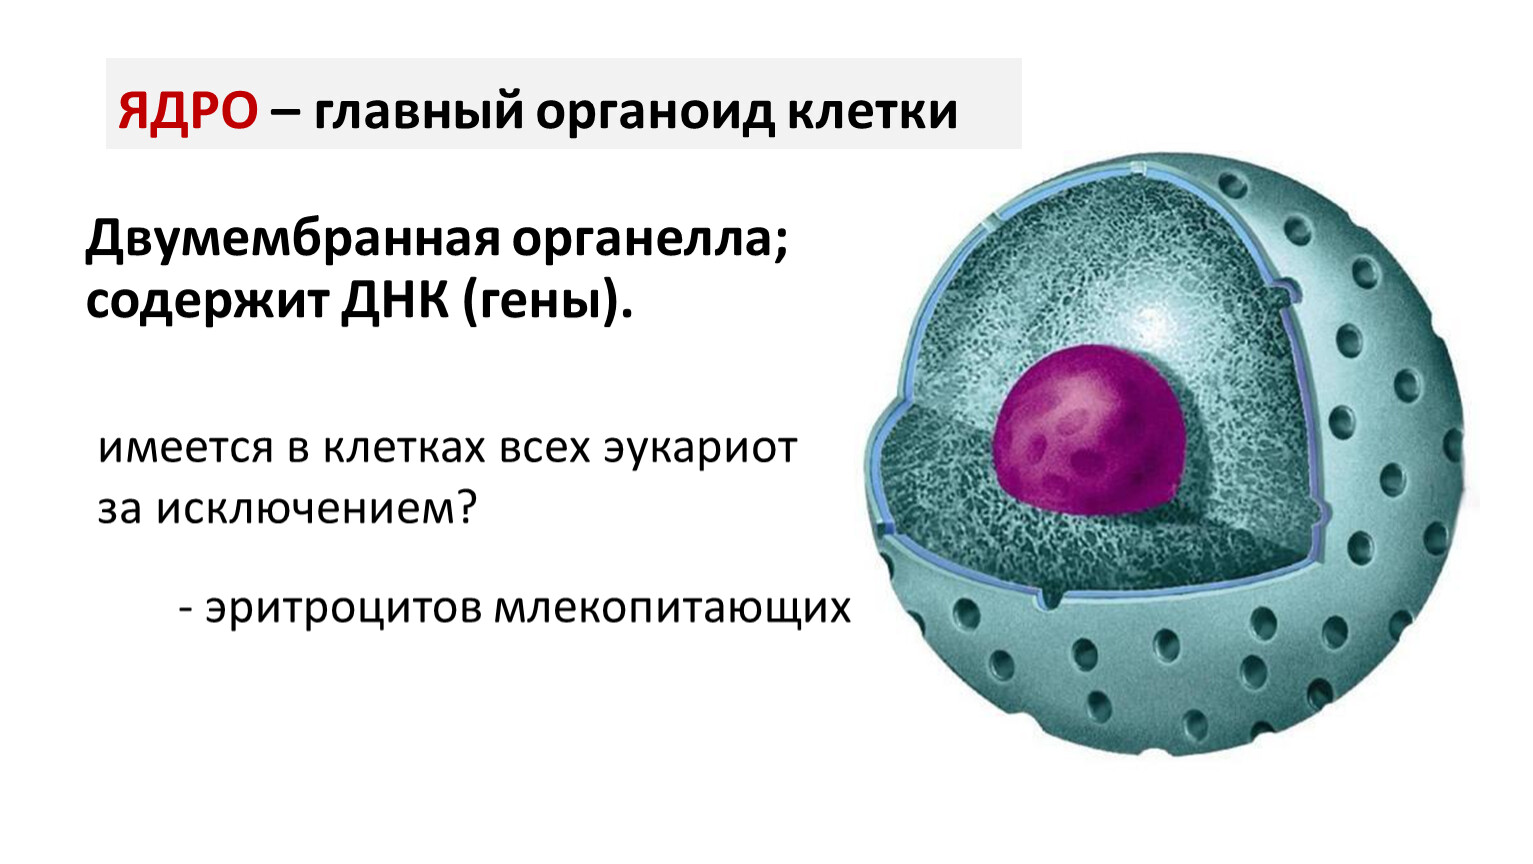 Ядро клетки двумембранный органоид